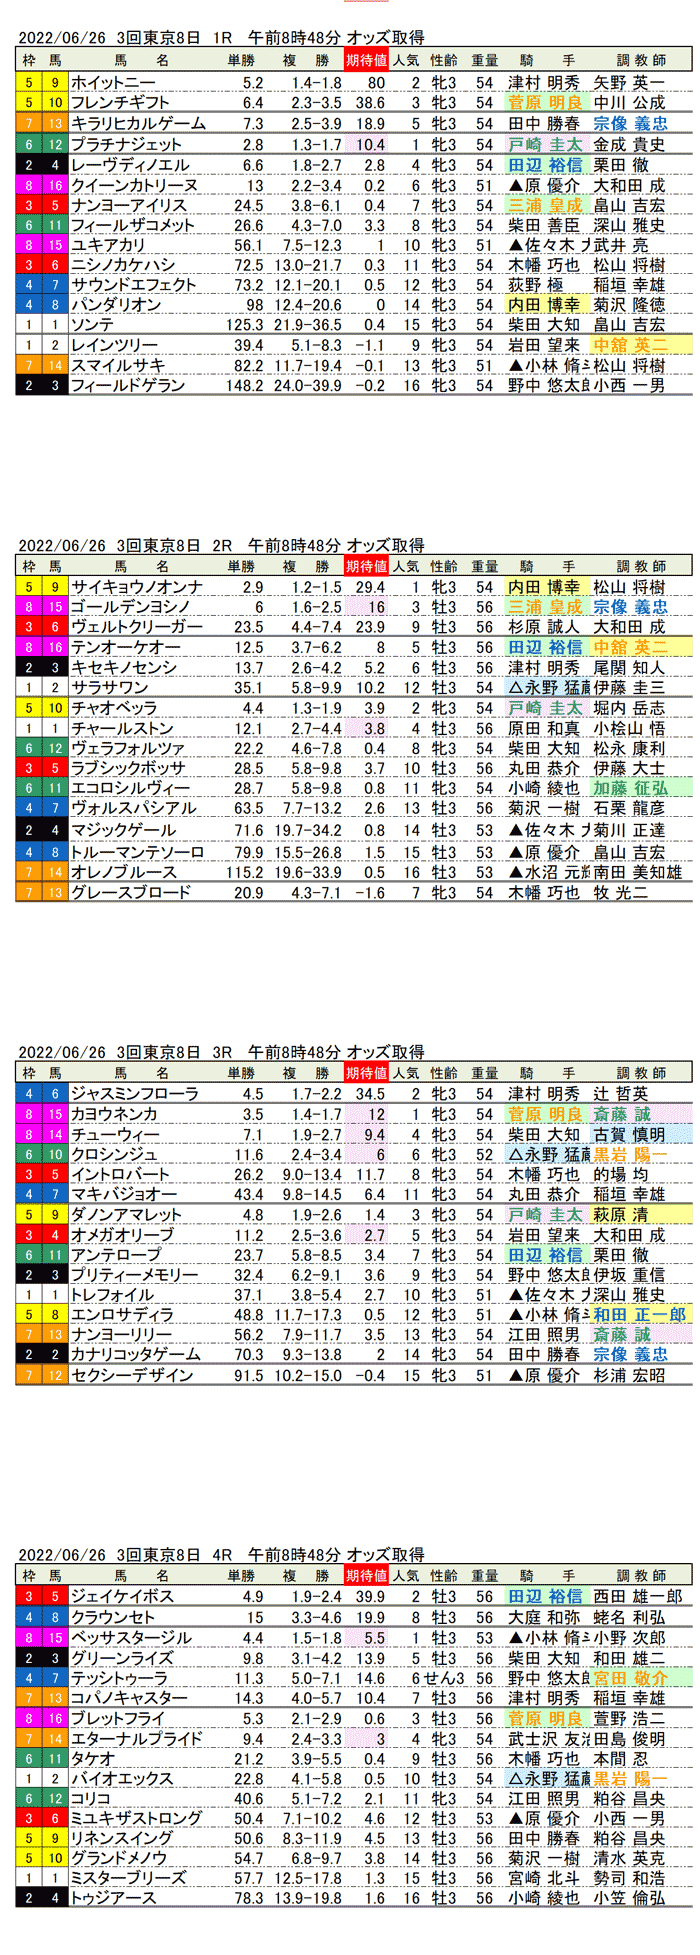 22年6月26日（日曜）期待値の公開 3回東京競馬8日目1R〜4R